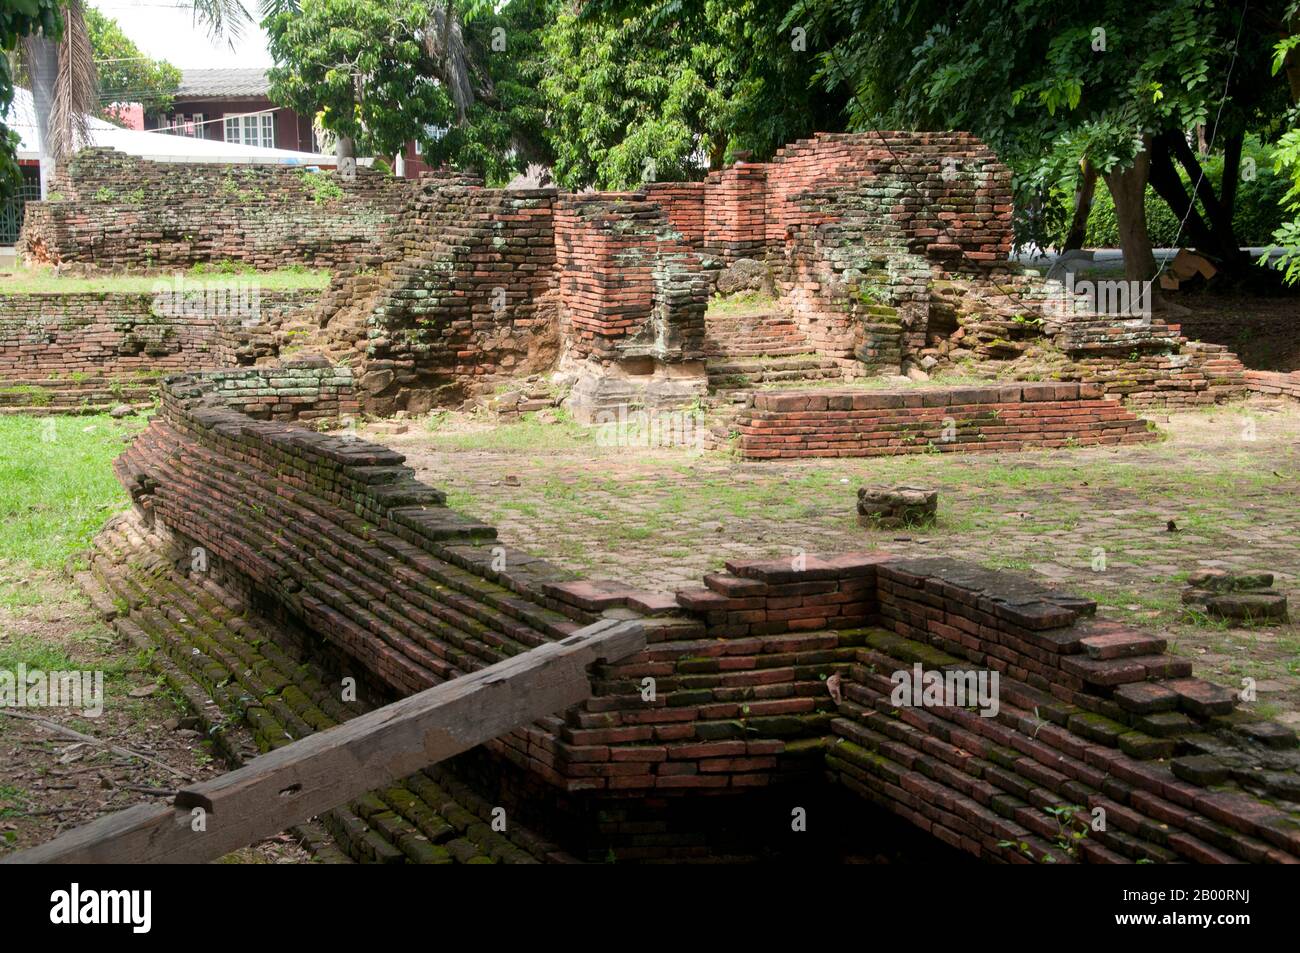 Thailand: Wat Thatnoi, Wiang Kum Kam, Chiang Mai. Im späten 13. Jahrhundert u.Z. aufgegeben und heute in Ruinen, war Wiang Kum kam einst die Hauptstadt der nördlichen Region Thailands und liegt südlich von Chiang Mai. Es wurde von König Mangrai zu einer Zeit im 13. Jahrhundert nach seinem Sieg über das Hariphunchai Königreich des modernen Lamphun gebaut. Doch nachdem die Stadt mehrere Male überflutet hatte, entschied sich Mangrai, die Hauptstadt seines Königreichs umzusiedeln und verlegte sie weiter nördlich am Fluss Ping zu einem Ort, der jetzt die Stadt Chiang Mai ist. Stockfoto